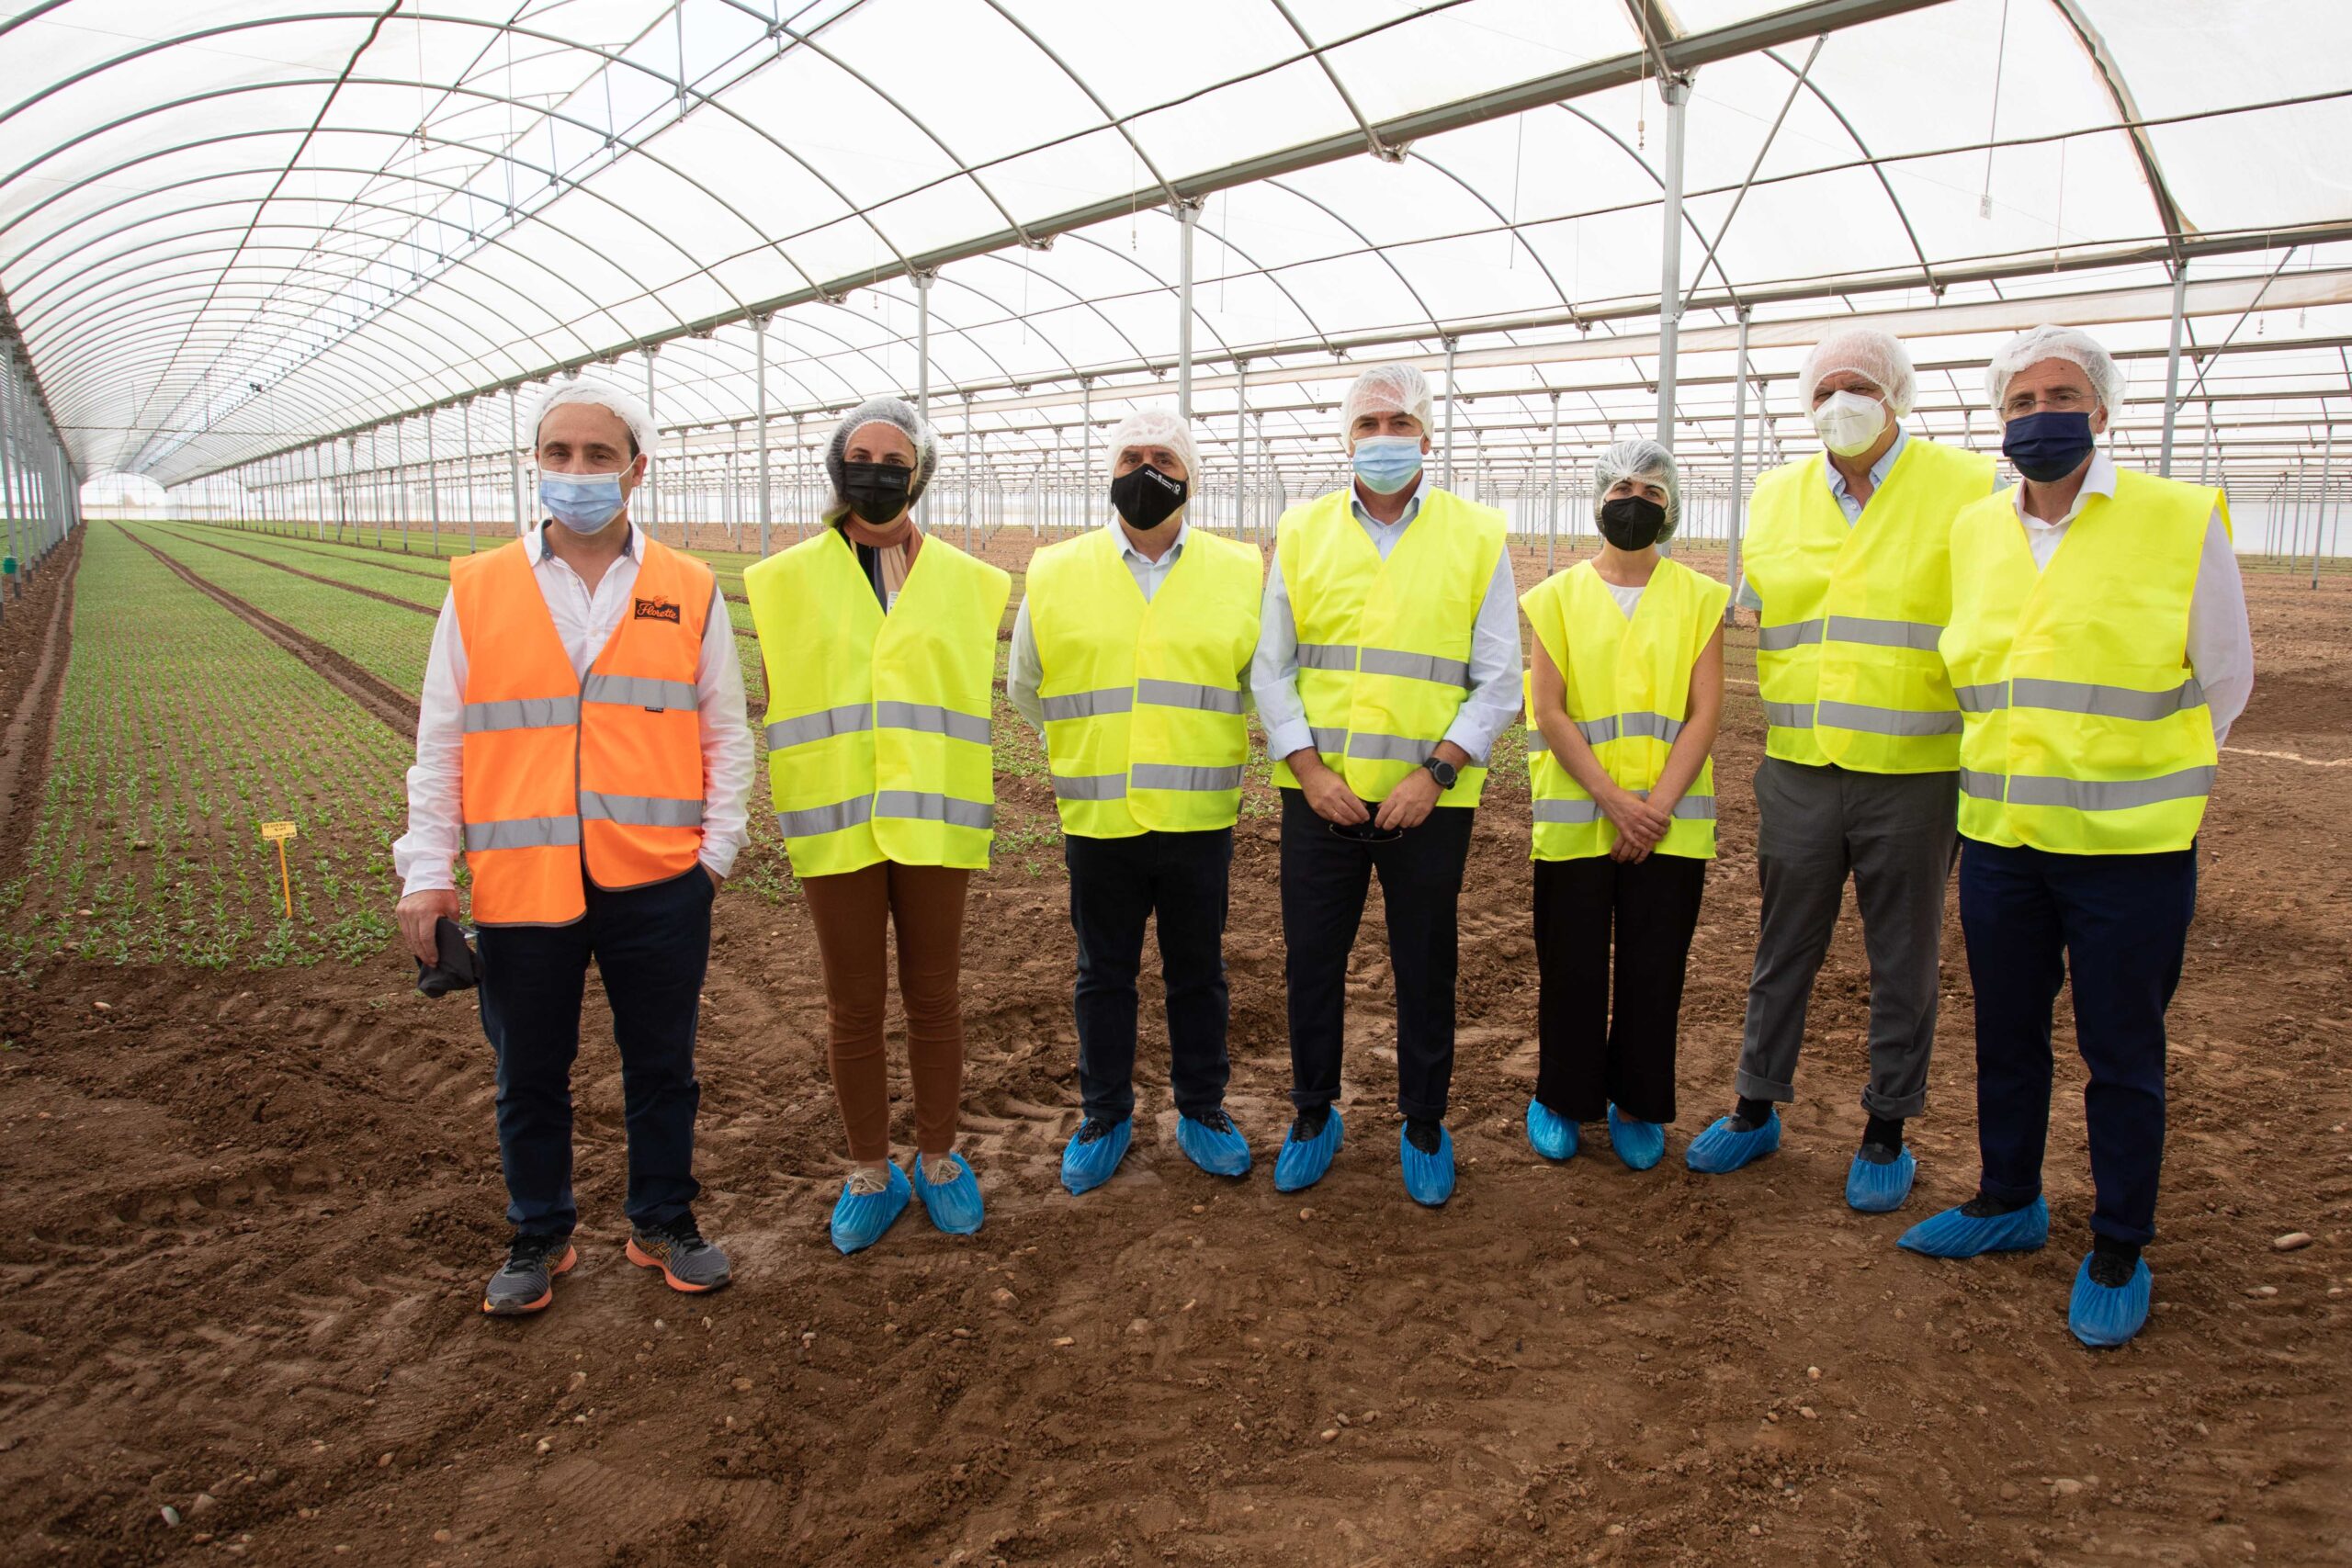 El consejero Cigudosa destaca la Unidad de I+D+i de Florette Ibérica como ejemplo de innovación de la industria agroalimentaria en Navarra